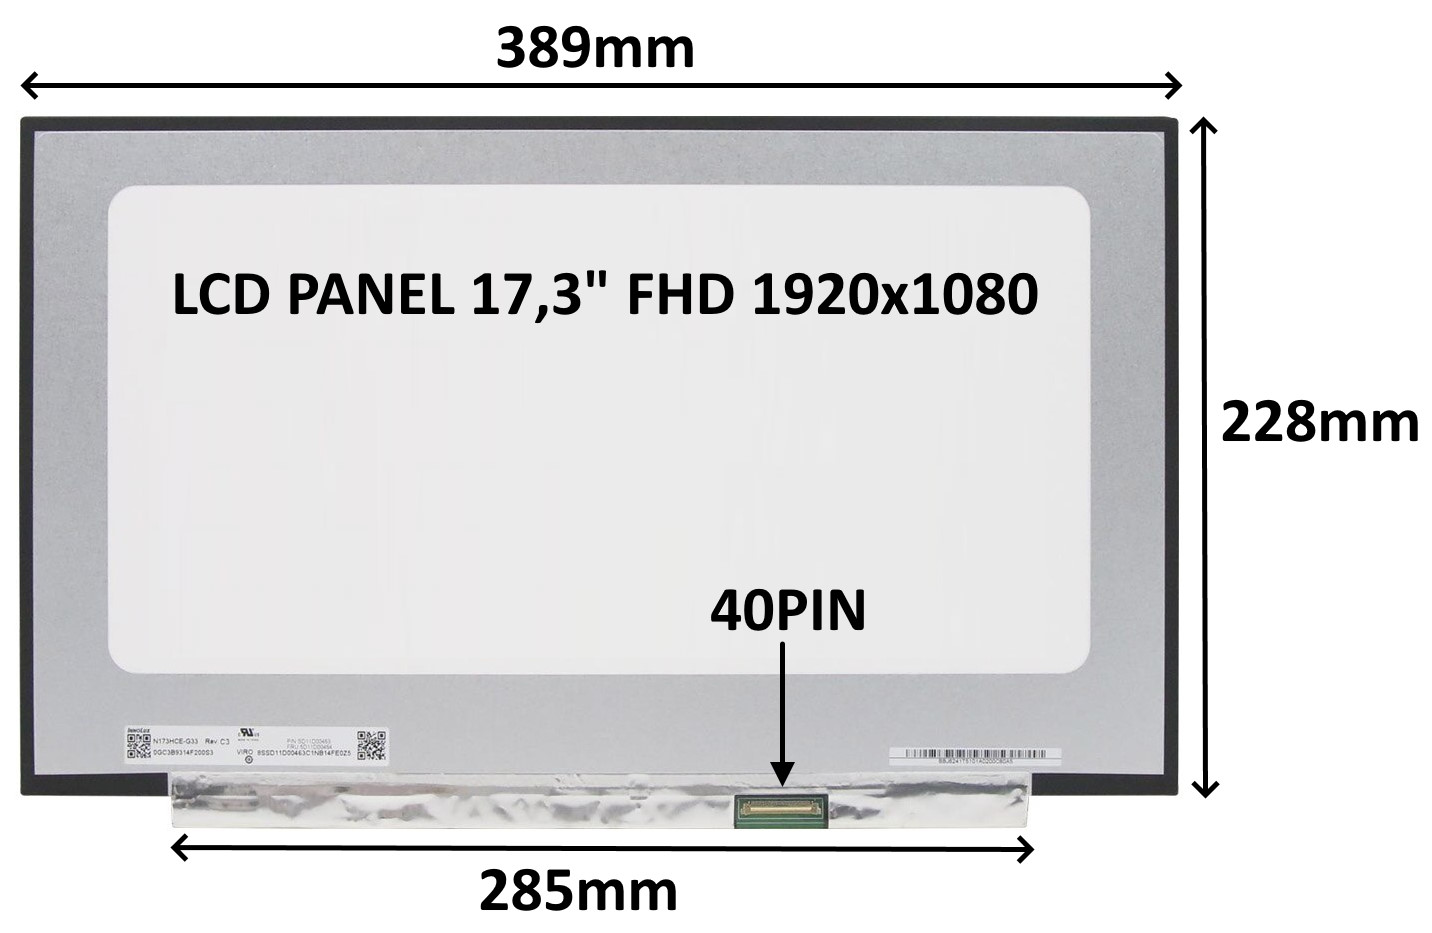 LCD PANEL 17, 3